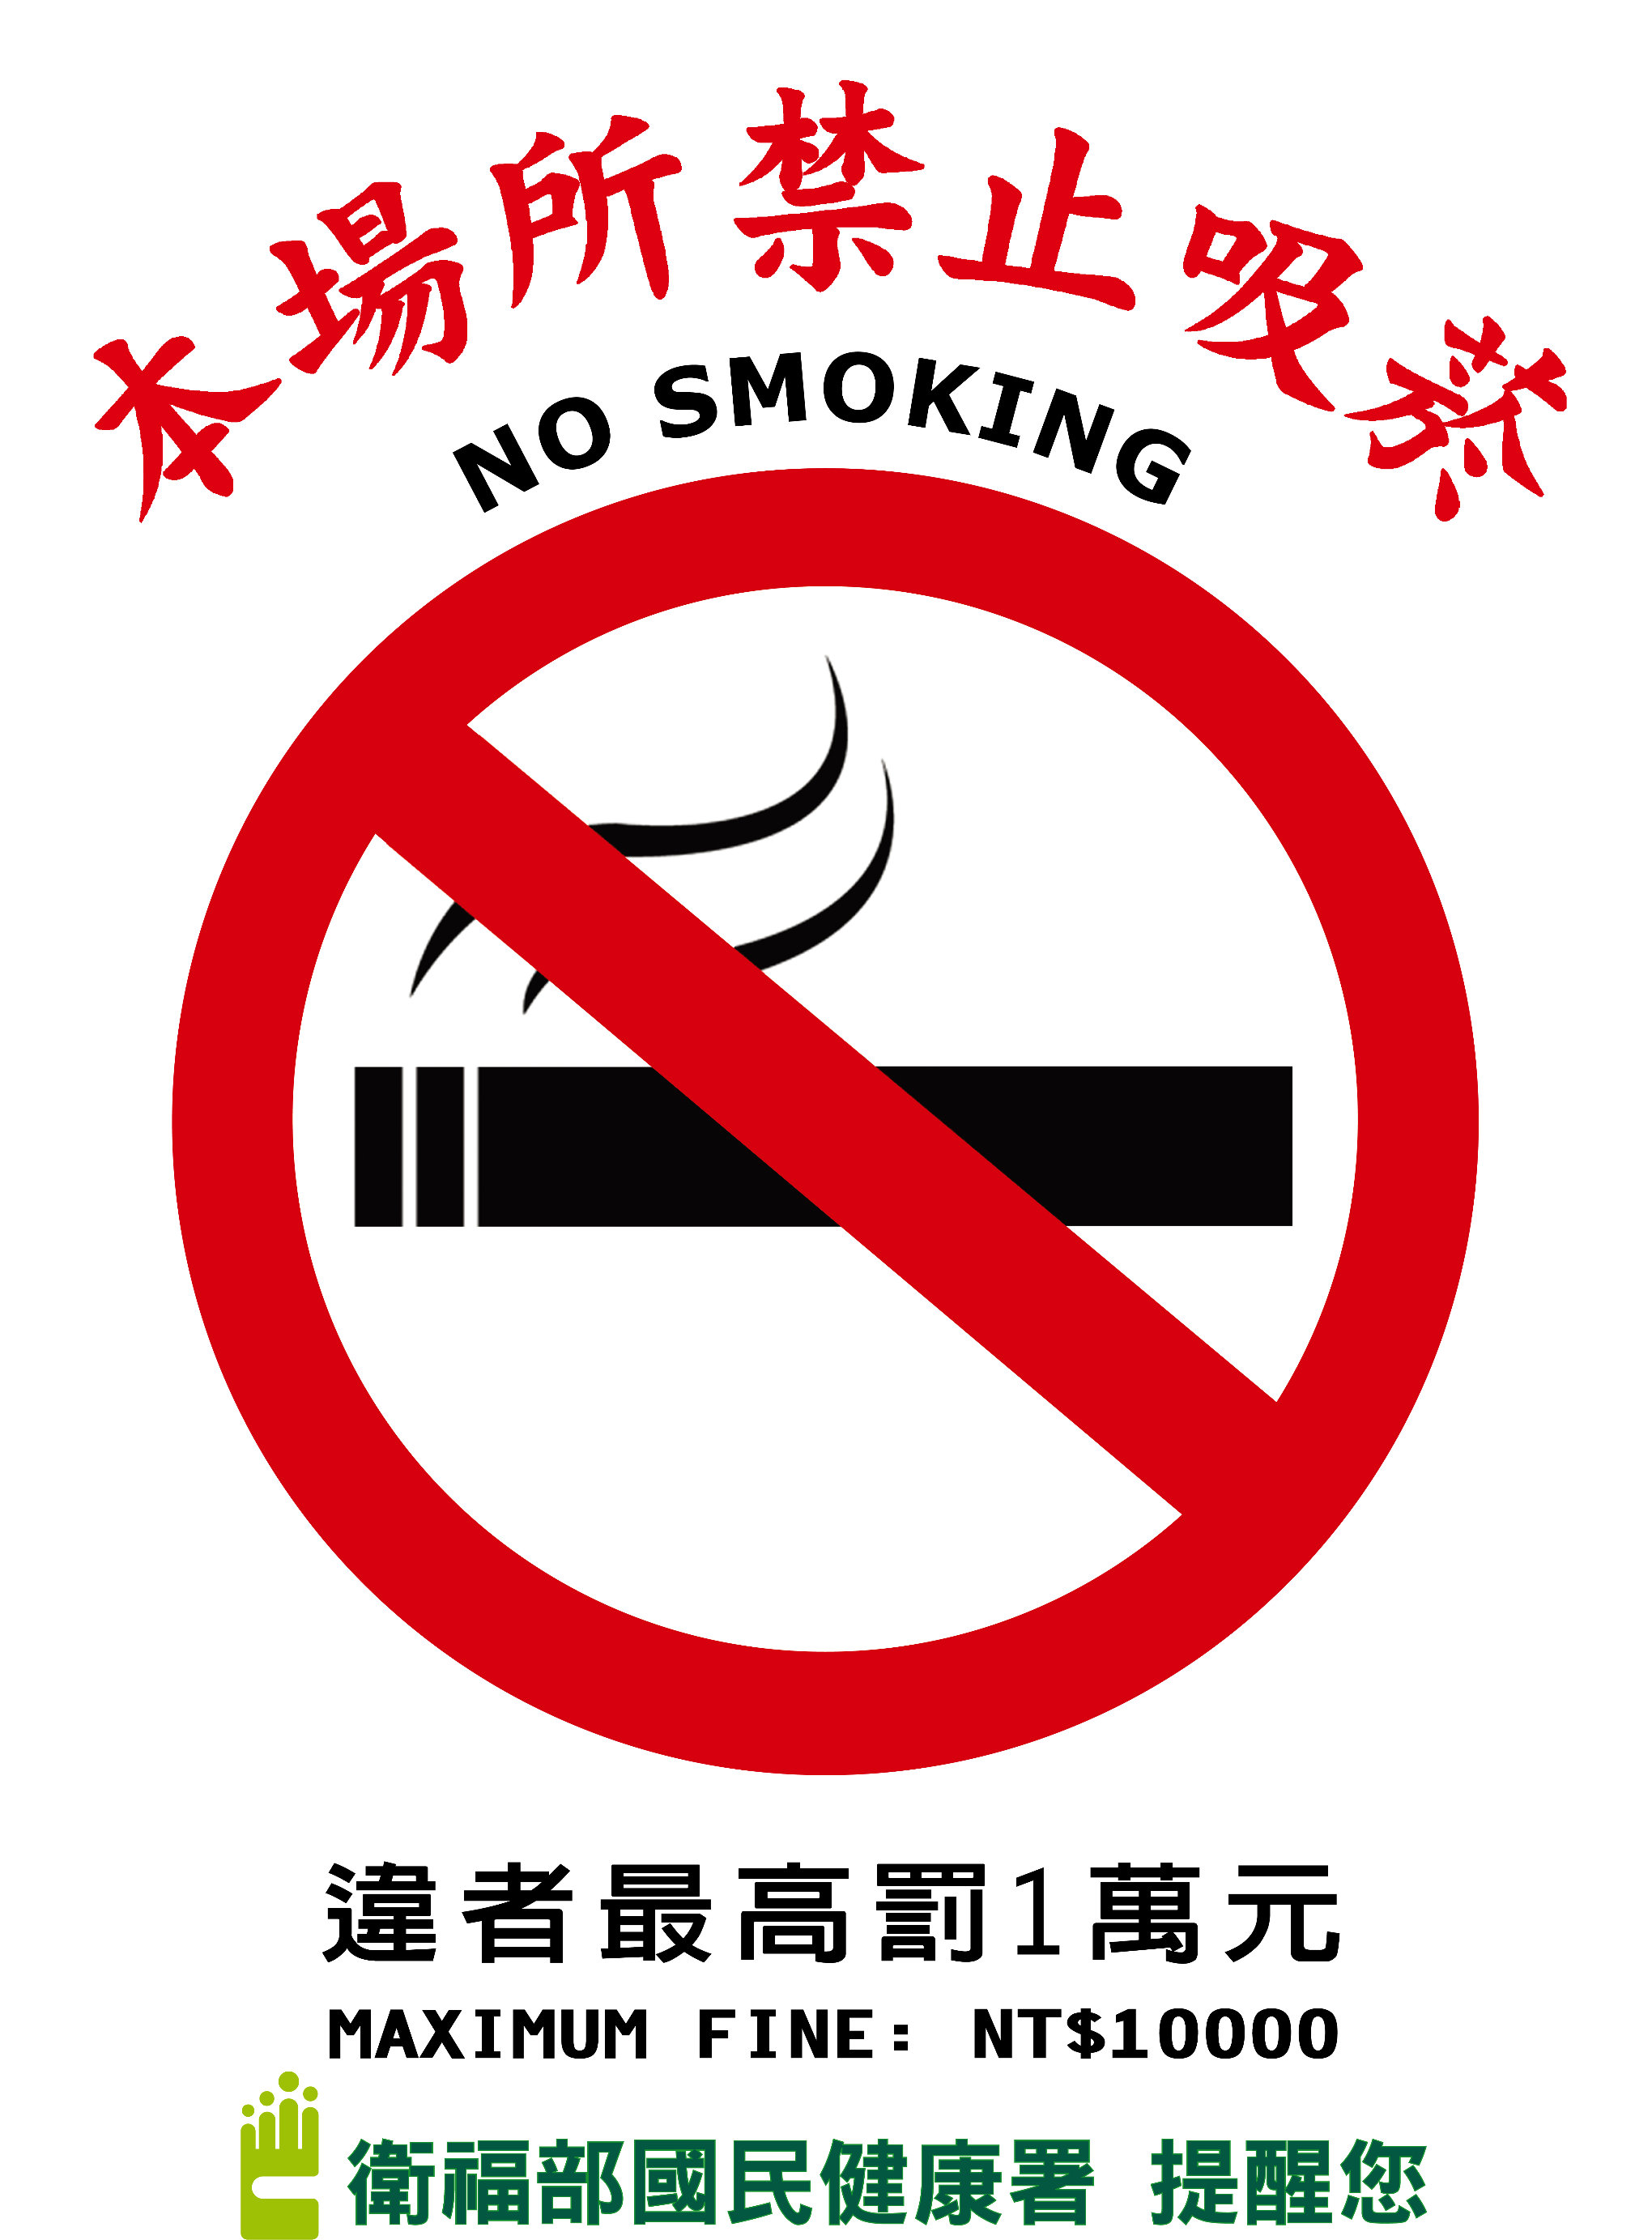 本場所禁止吸菸，違者最高罰1萬元(海報-大)